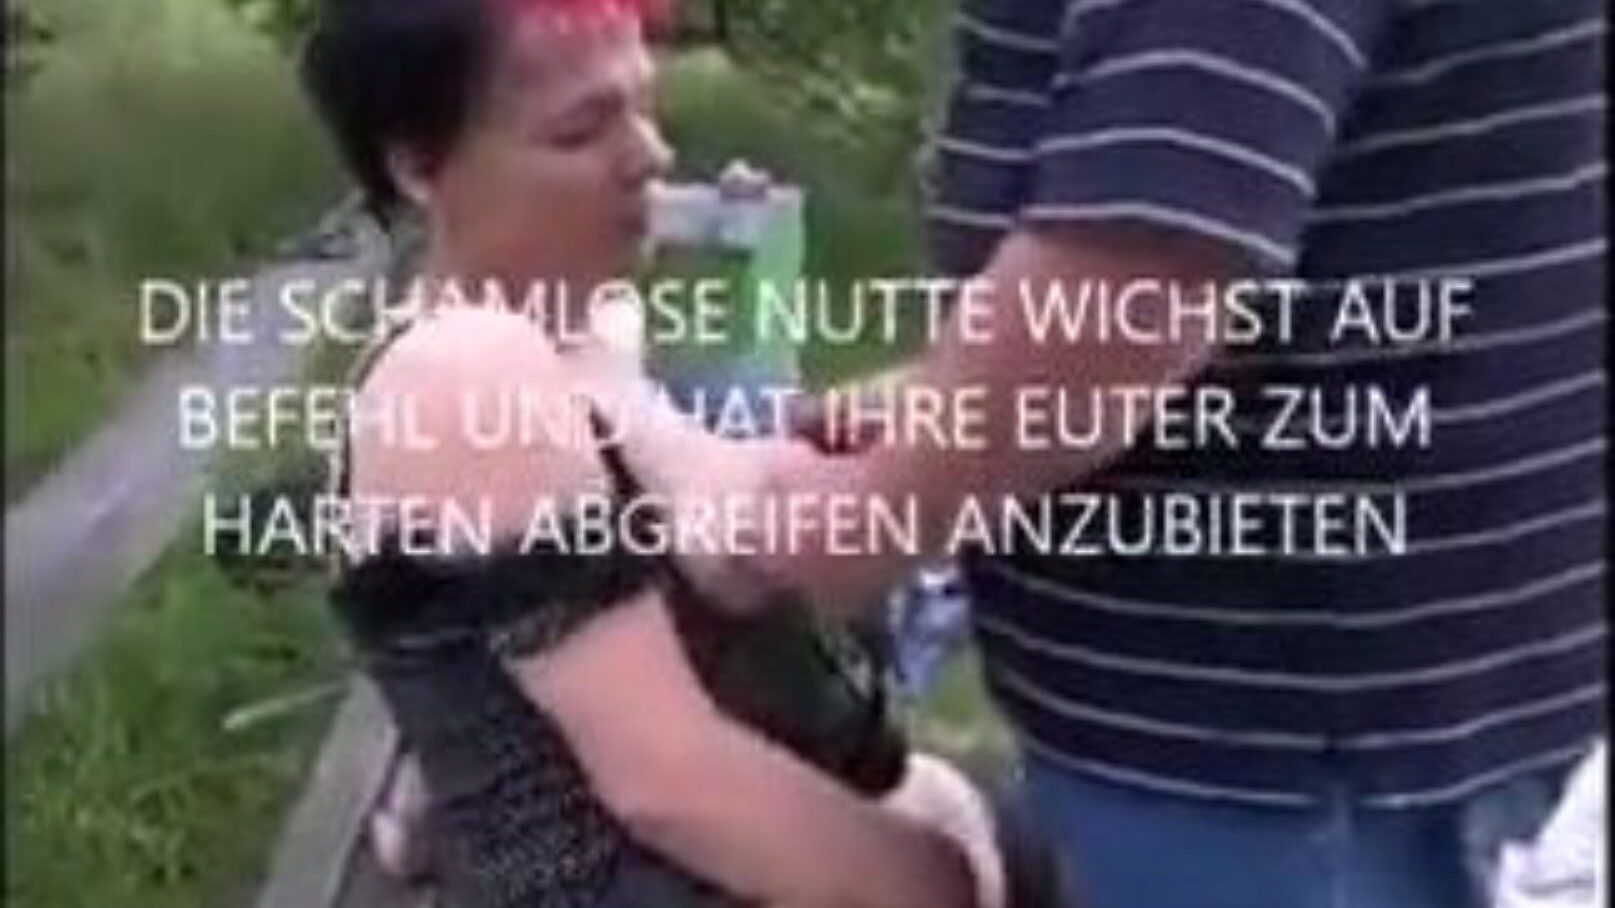 milf von liepzig: milf online δωρεάν πορνό βίντεο 65 - xhamster παρακολουθήστε τη μητέρα μου θα ήθελα να γαμήσω το von liepzig tube σκηνή ταινίας σεξ δωρεάν στο xhamster, με την πιο καυτή συλλογή του γερμανικού milf online δωρεάν & δωρεάν μητέρα που θα ήθελα να γαμήσω xnxx πορνογραφικά επεισόδια βίντεο